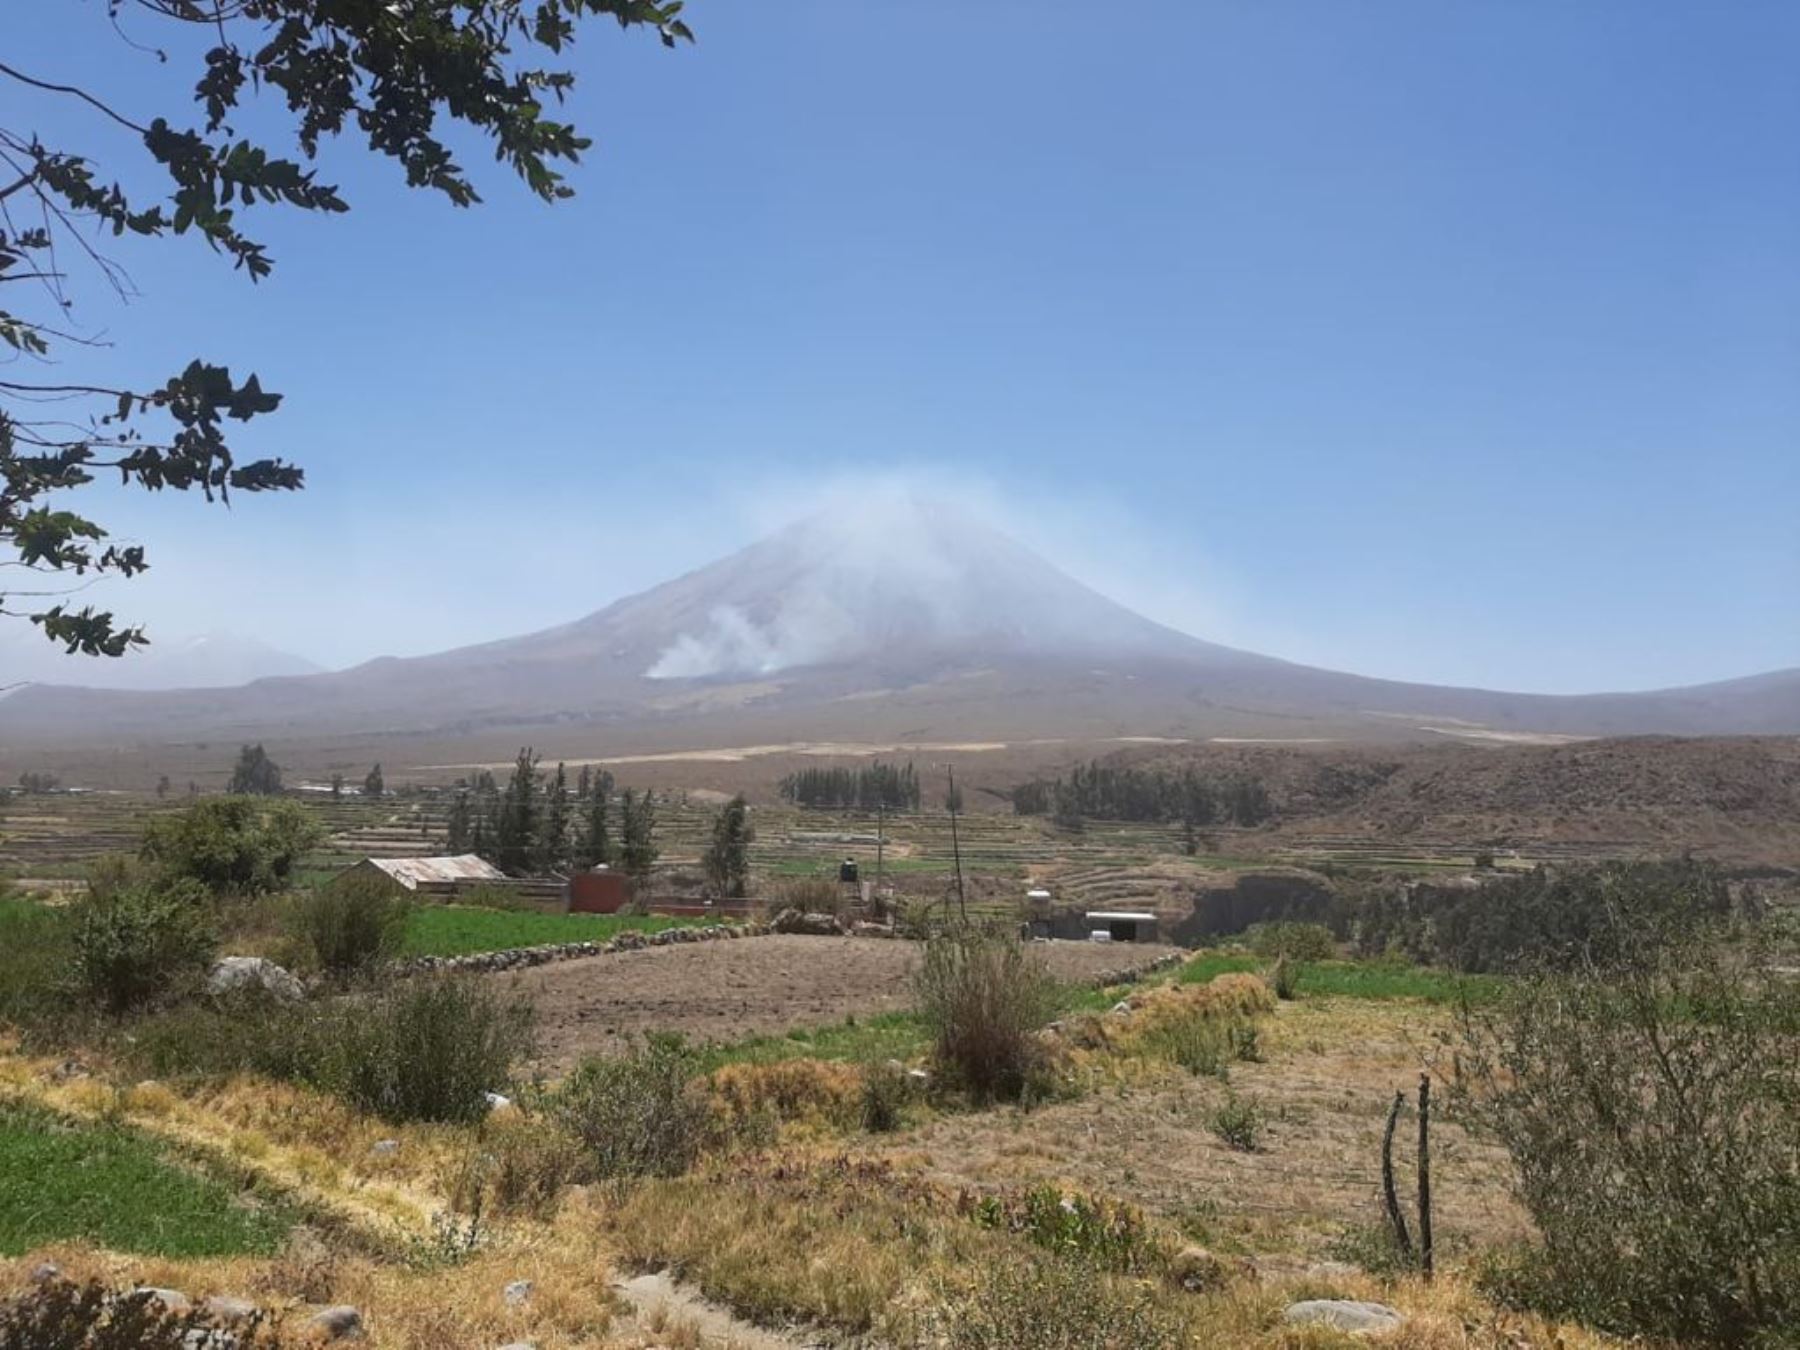 Alerta en Arequipa por incendio forestal que se registra en estos momentos en las faldas del volcán Misti. Las autoridades tratan de sofocar el fuego. ANDINA/Difusión